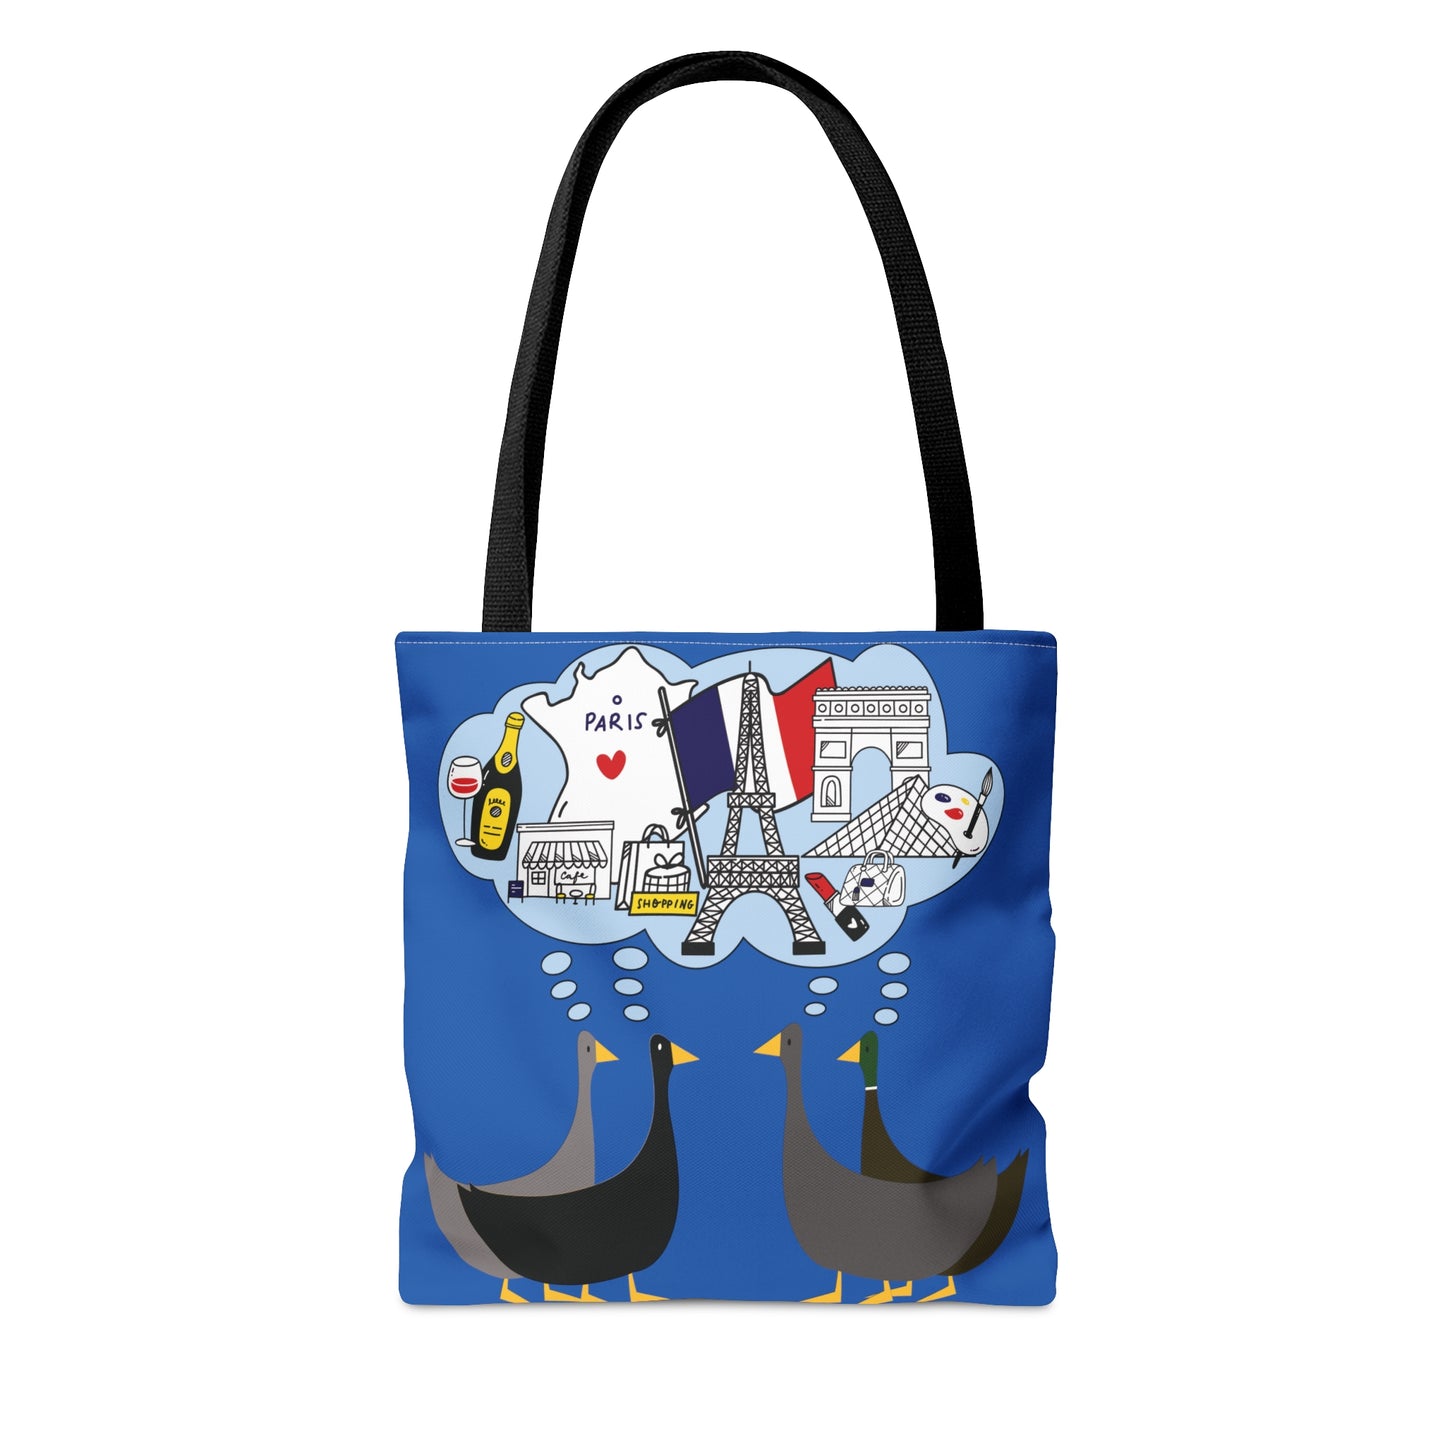 Ducks dreaming of Paris - Denim 0066cc - Tote Bag